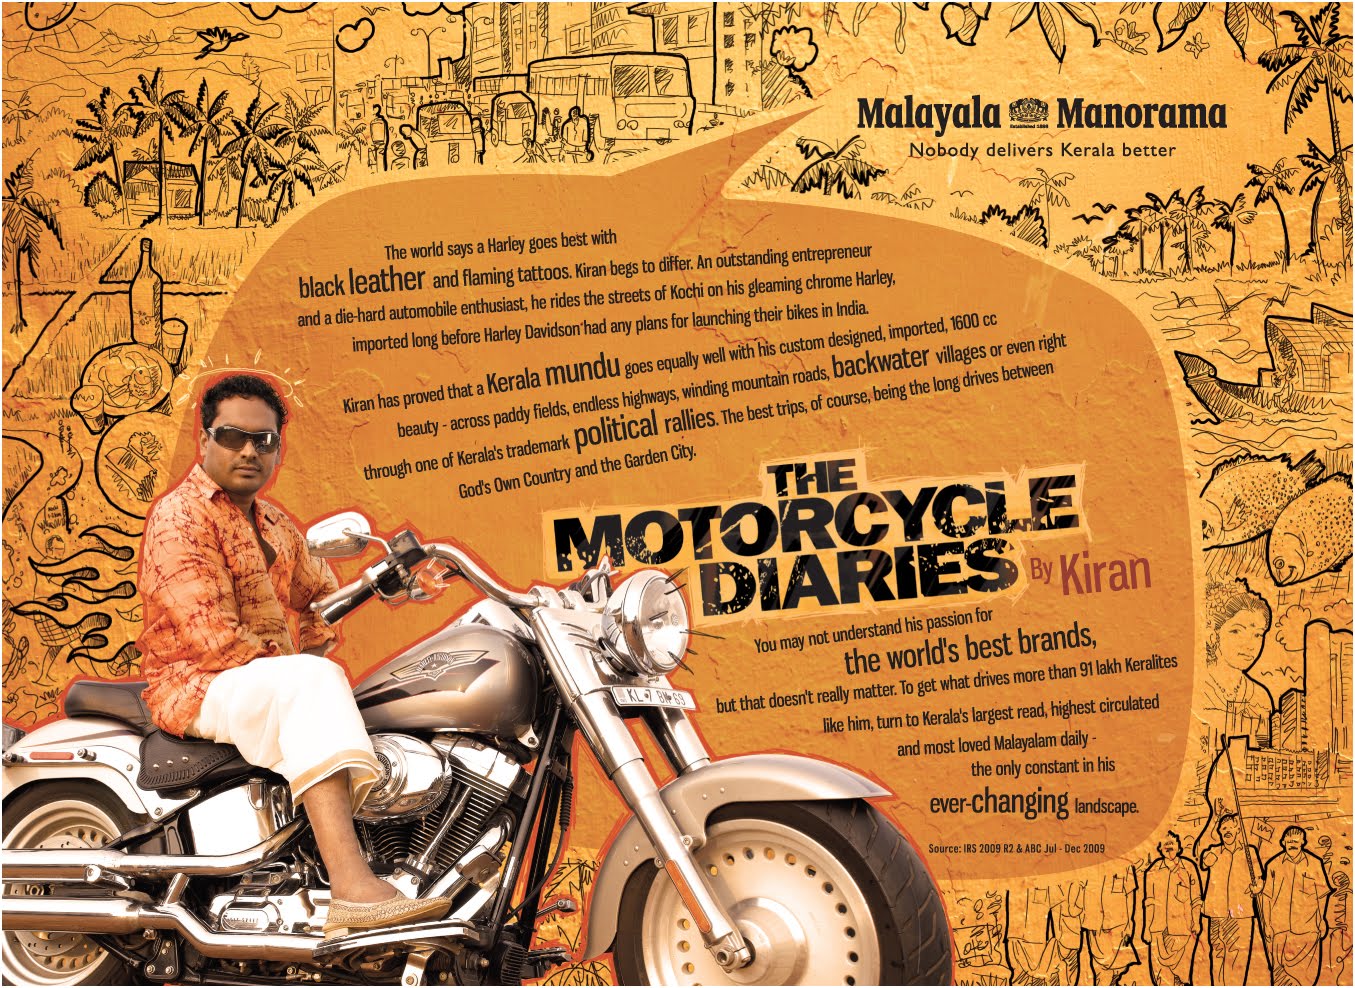 Malayala Manorama - The Motorcycle Diaries by Kiran | Stark Communications Pvt Ltd